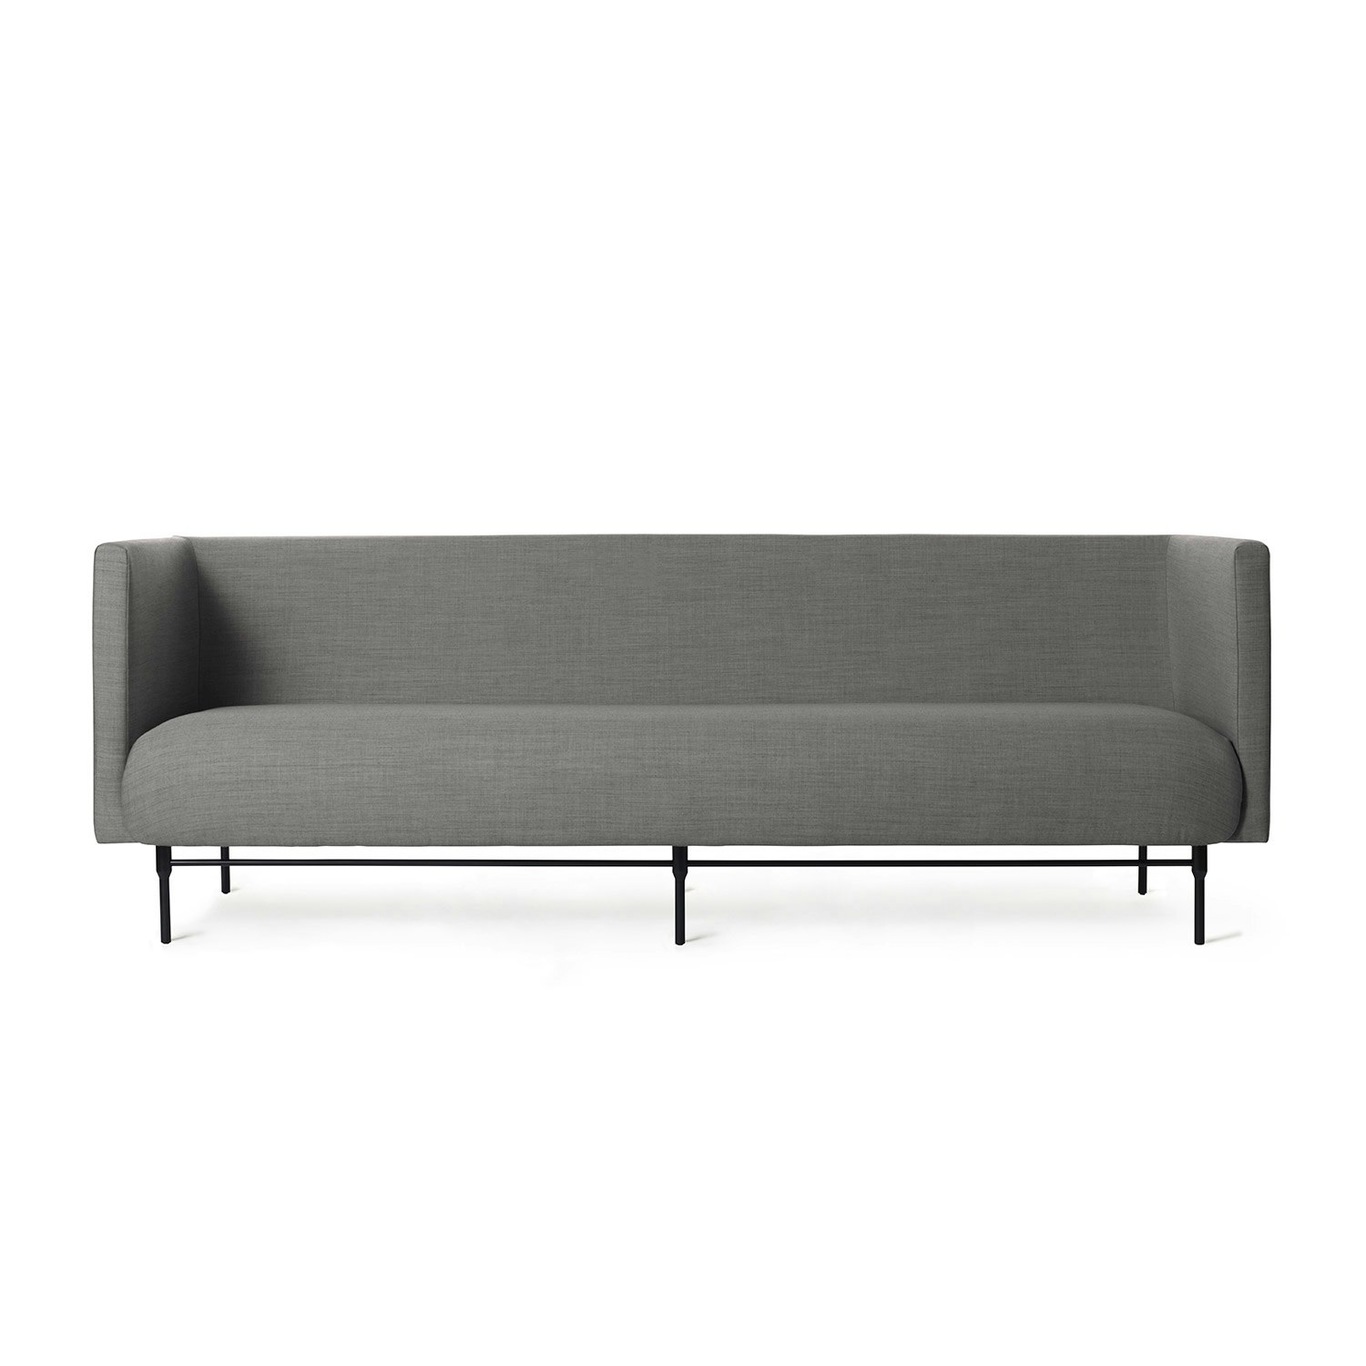 Galore 3-Seater Sofa, Grey melange